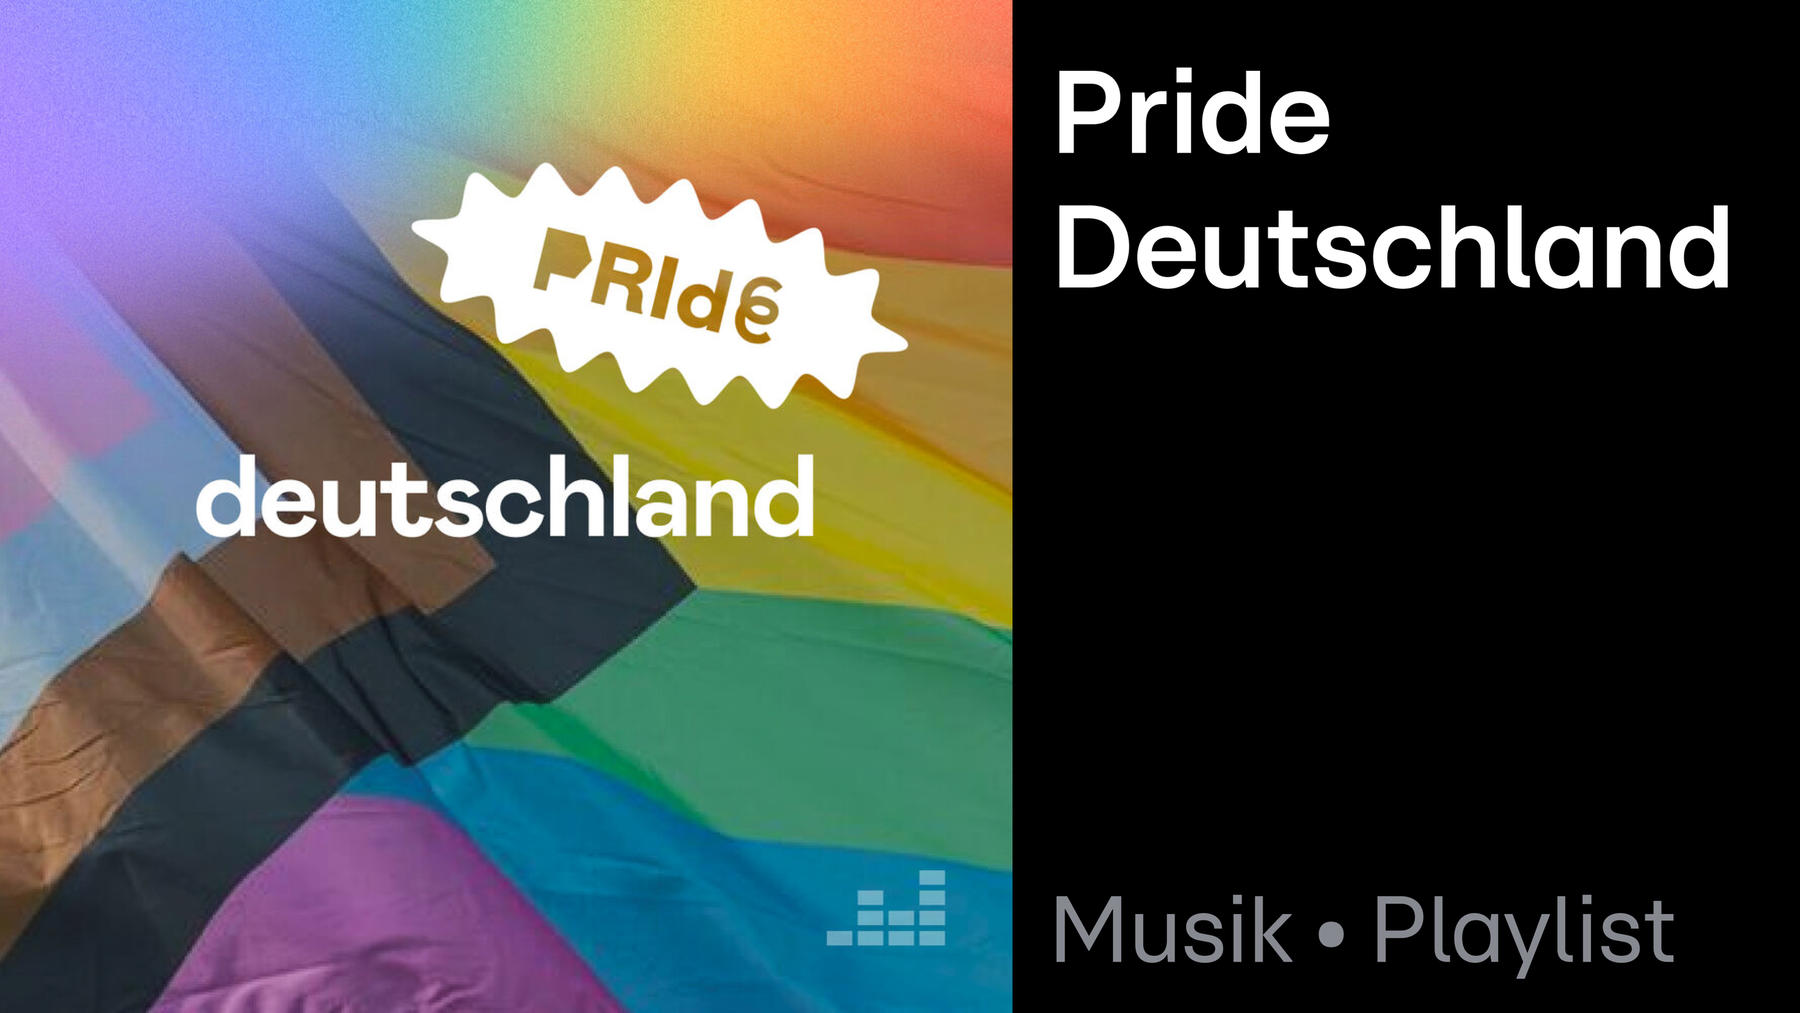 Playlist: Pride Deutschland